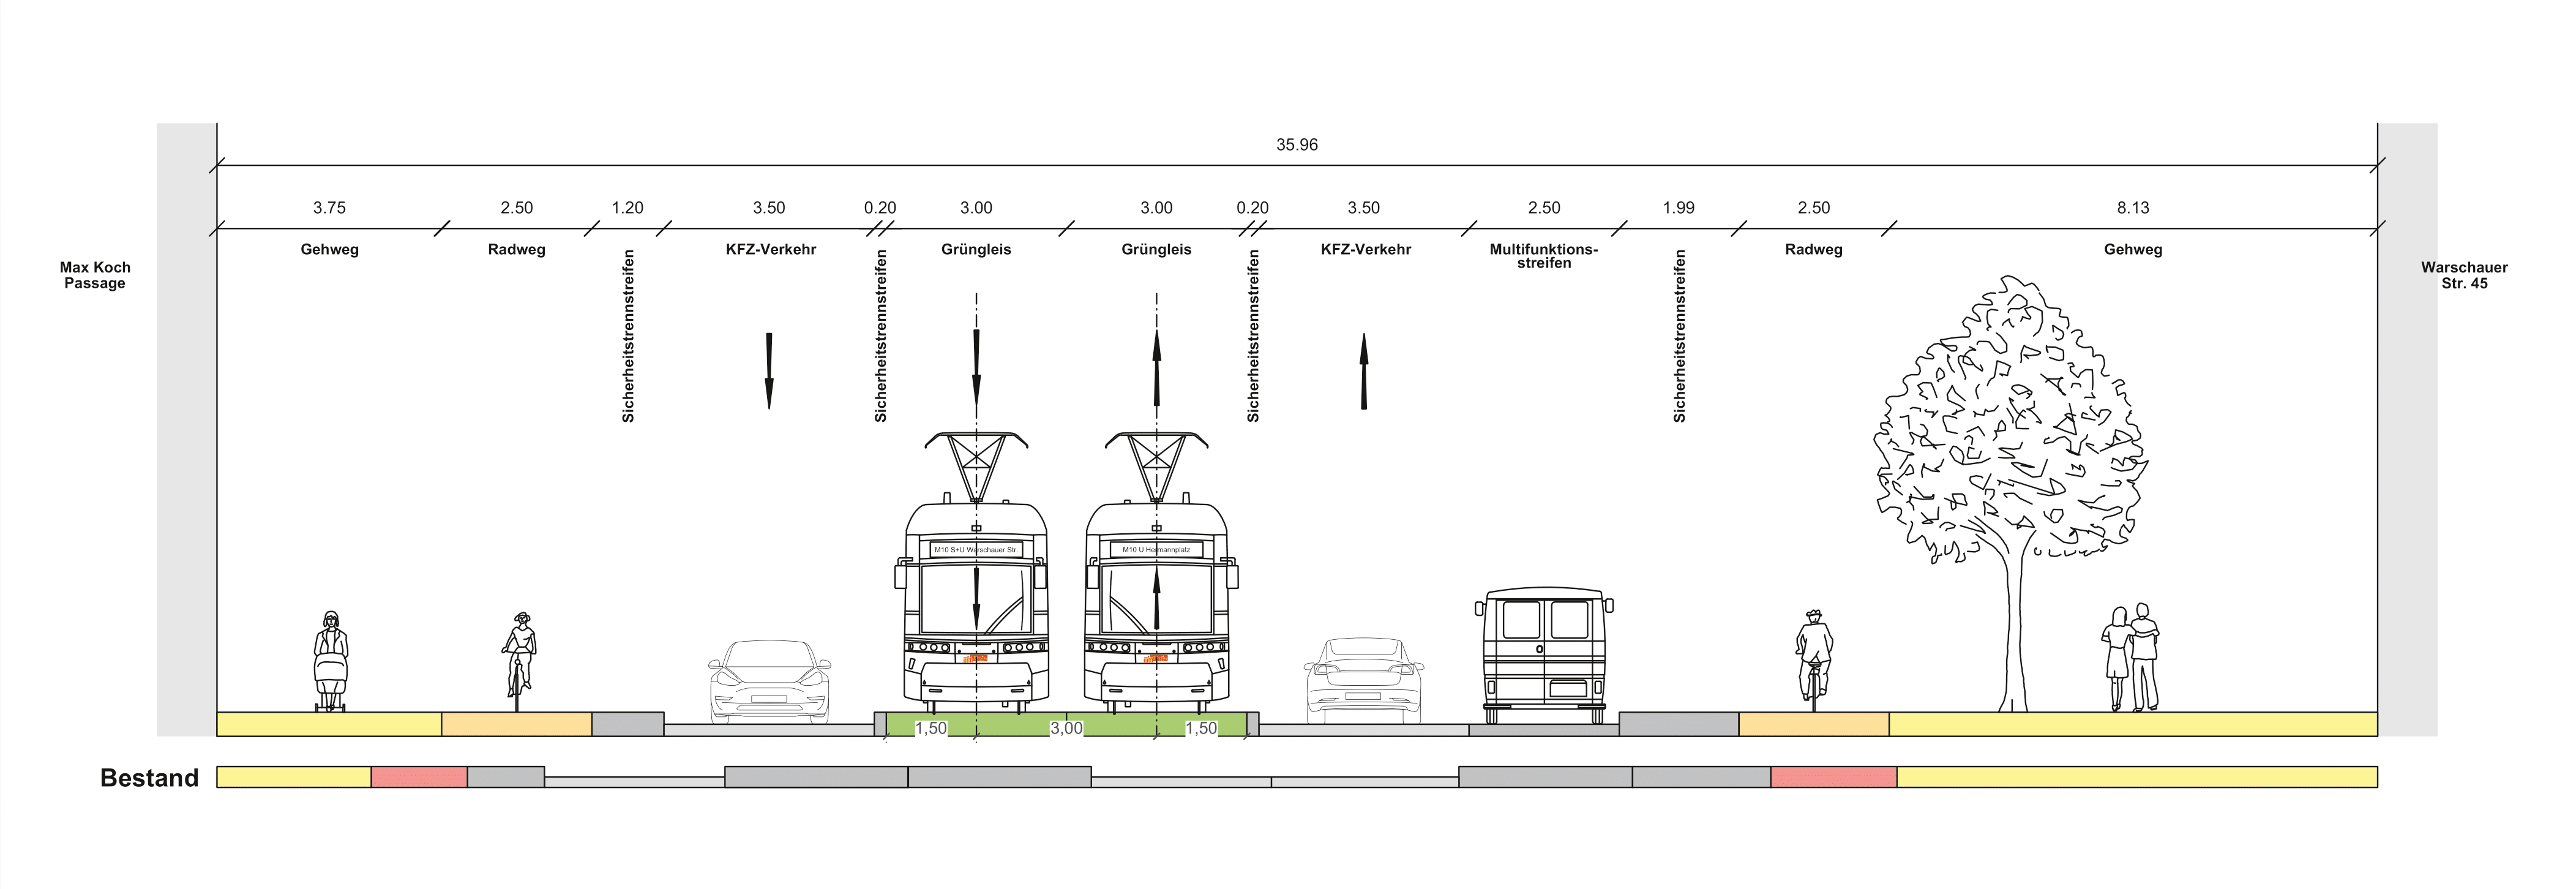 Diese Abbildung zeigt den Querschnitt des Bauabschnitts Warschauer Straße als eine technische Zeichnung